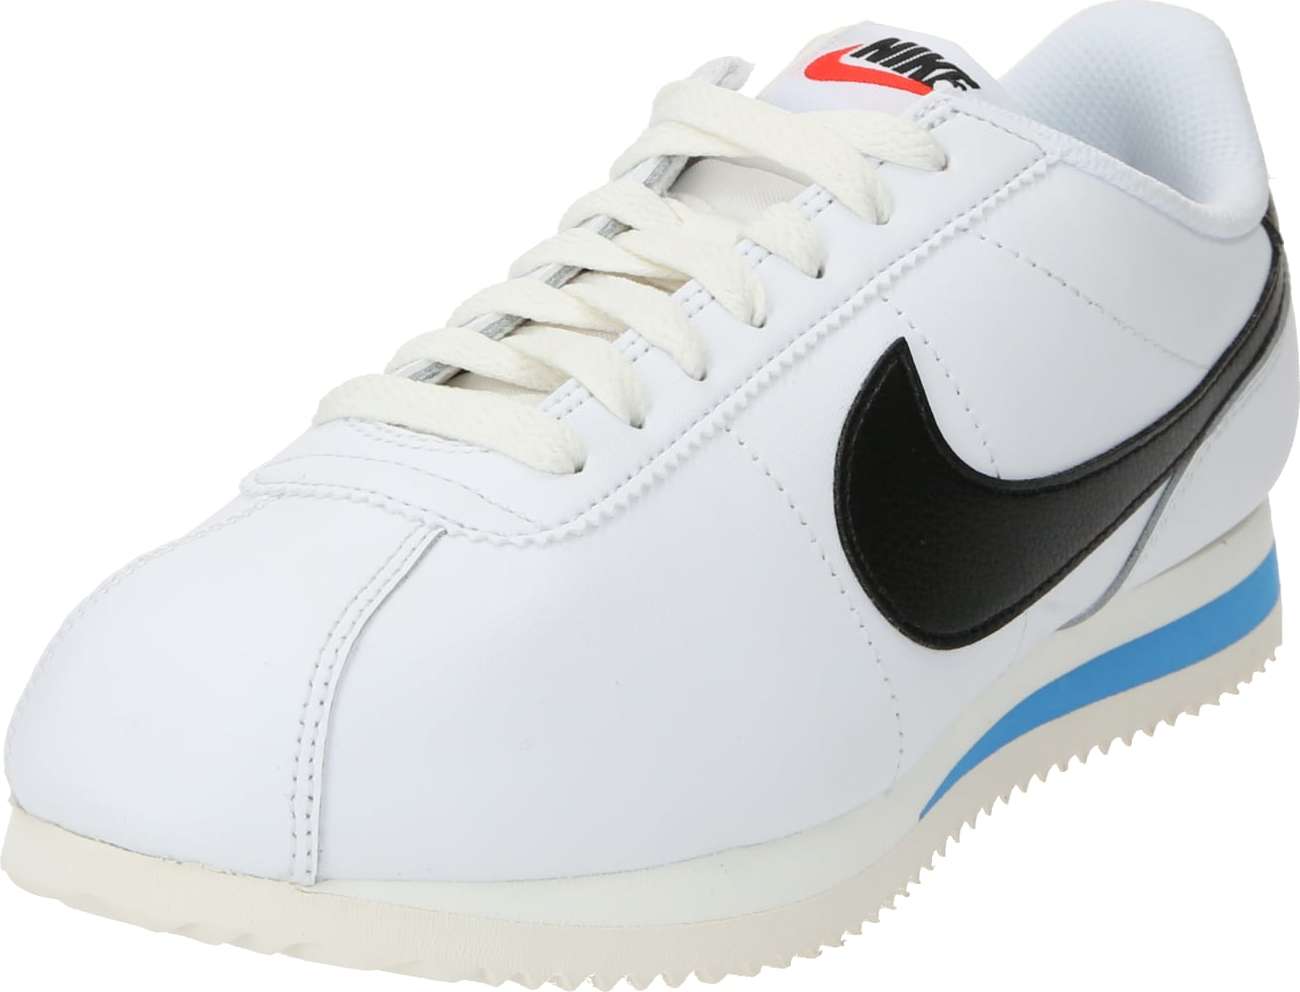 Tenisky 'Cortez' Nike Sportswear modrá / červená / černá / bílá